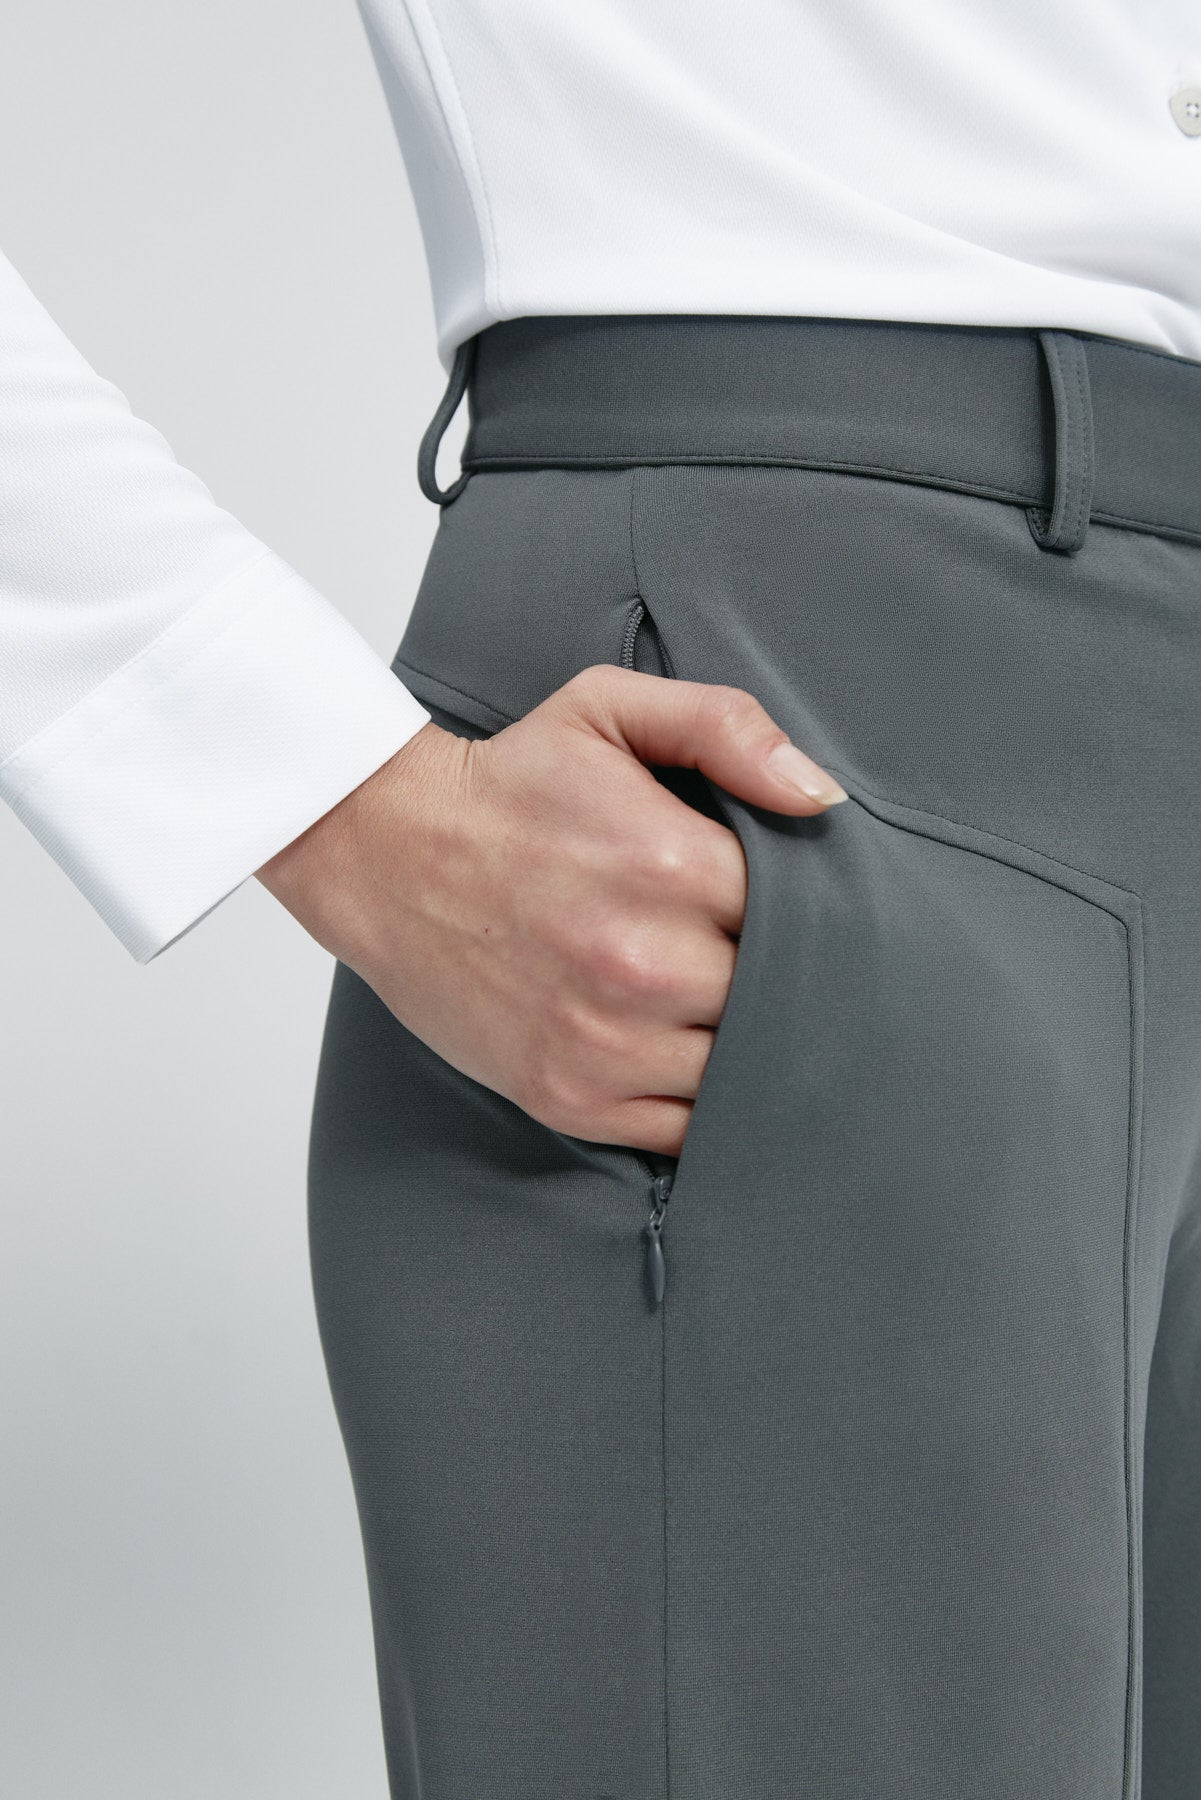 Pantalón de mujer gris de Sepiia, cómodo y resistente, ideal para cualquier ocasión. Foto retrato